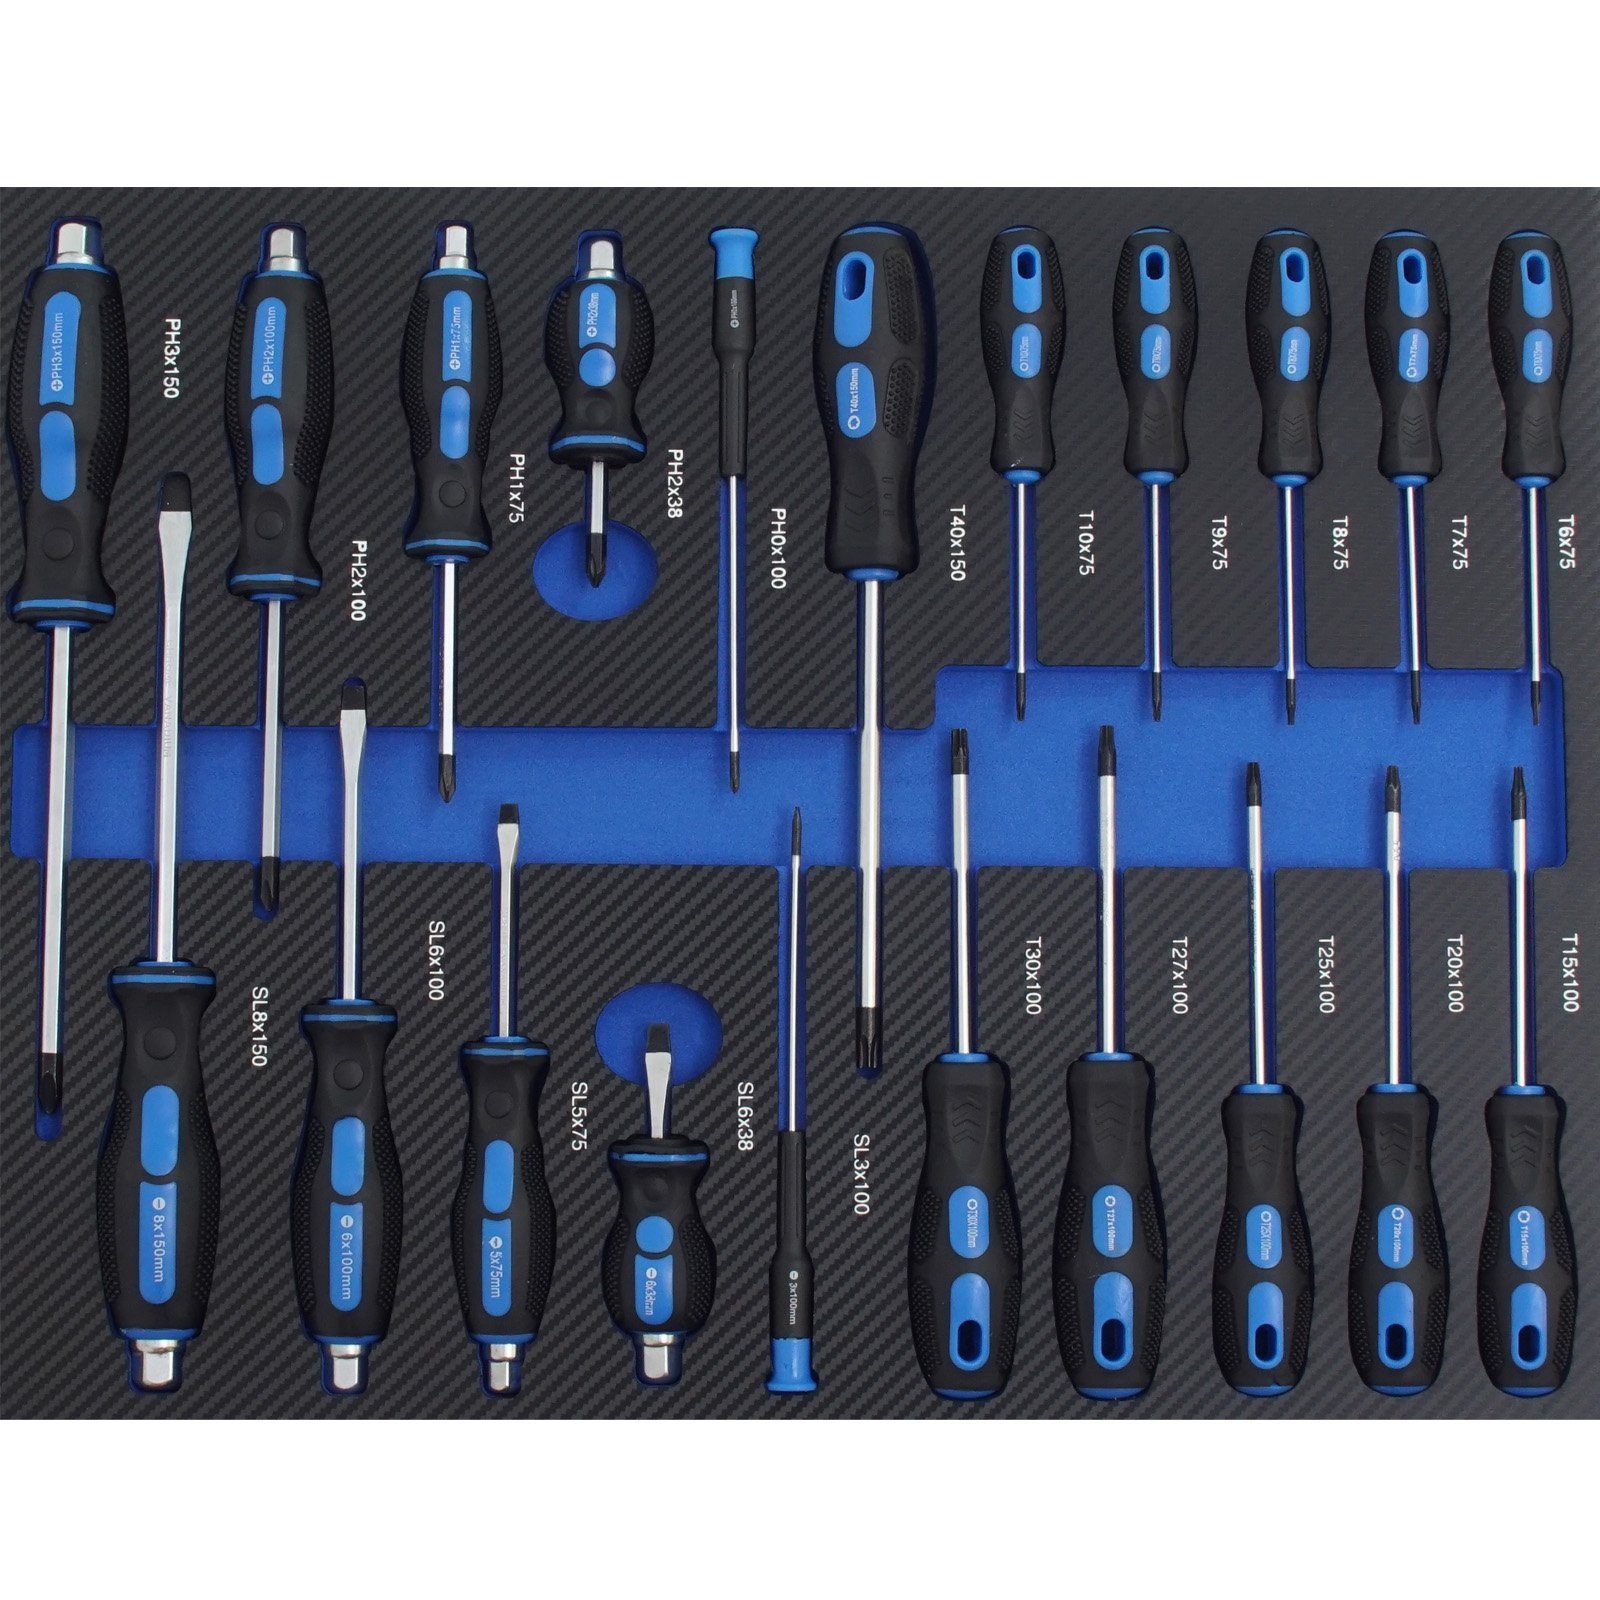 Werkstattwagen TRUTZHOLM 520x400mm Werkzeugeinlagen Einlagen (Set), blau bestückt, Werkzeugsatz Werkzeugset Profi